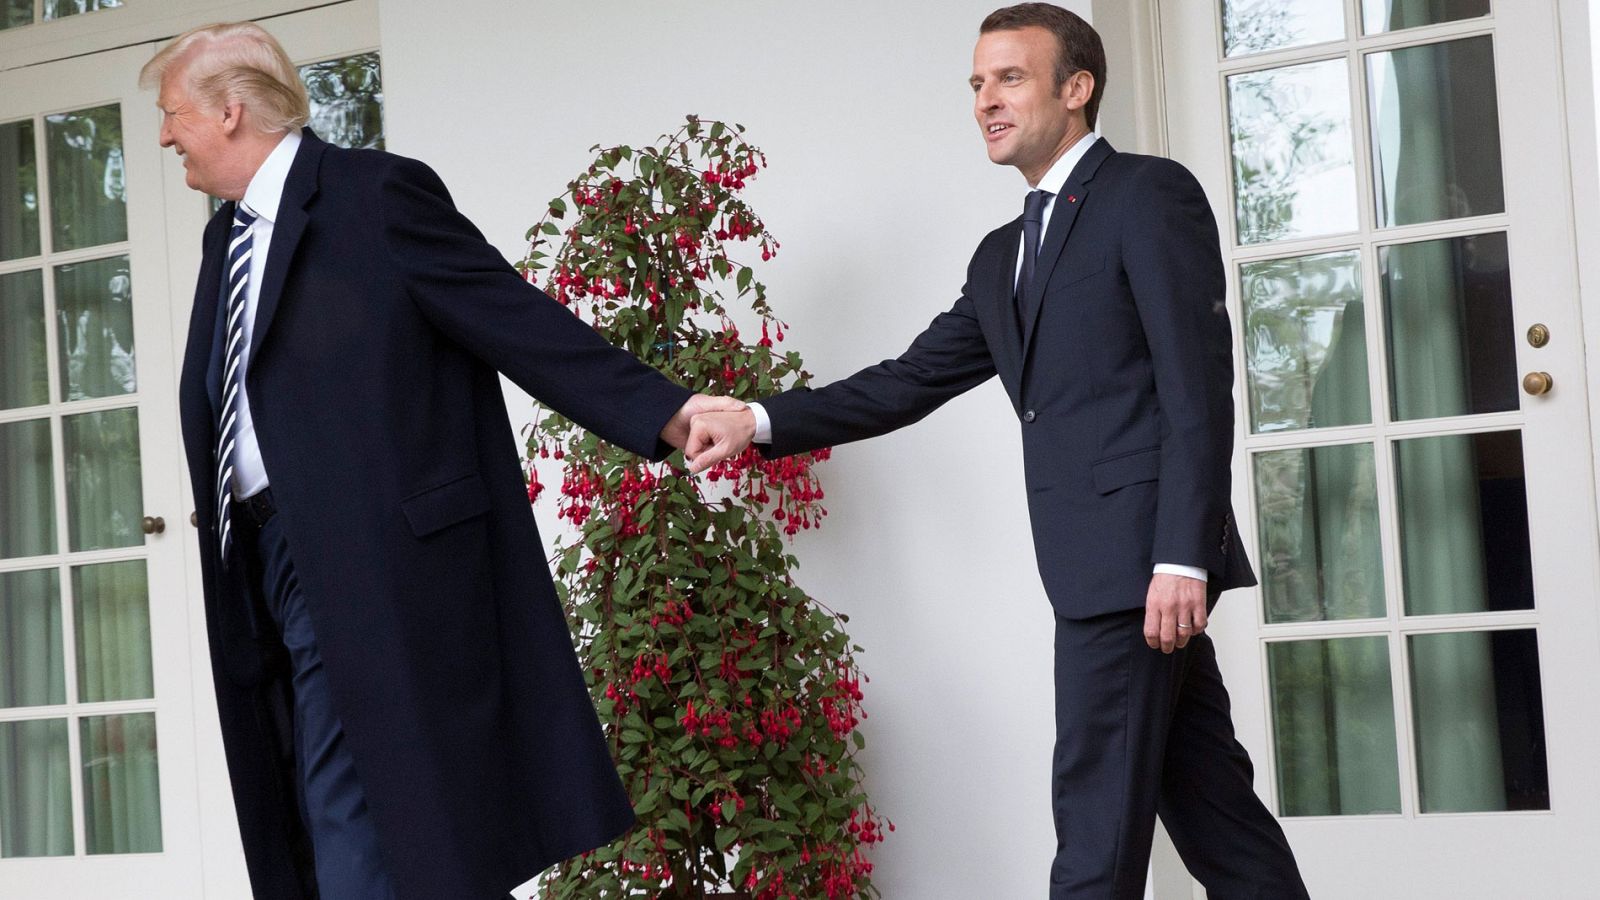 Trump vapulea el "horrible" acuerdo nuclear iraní ante Macron, que se ofrece a renegociarlo